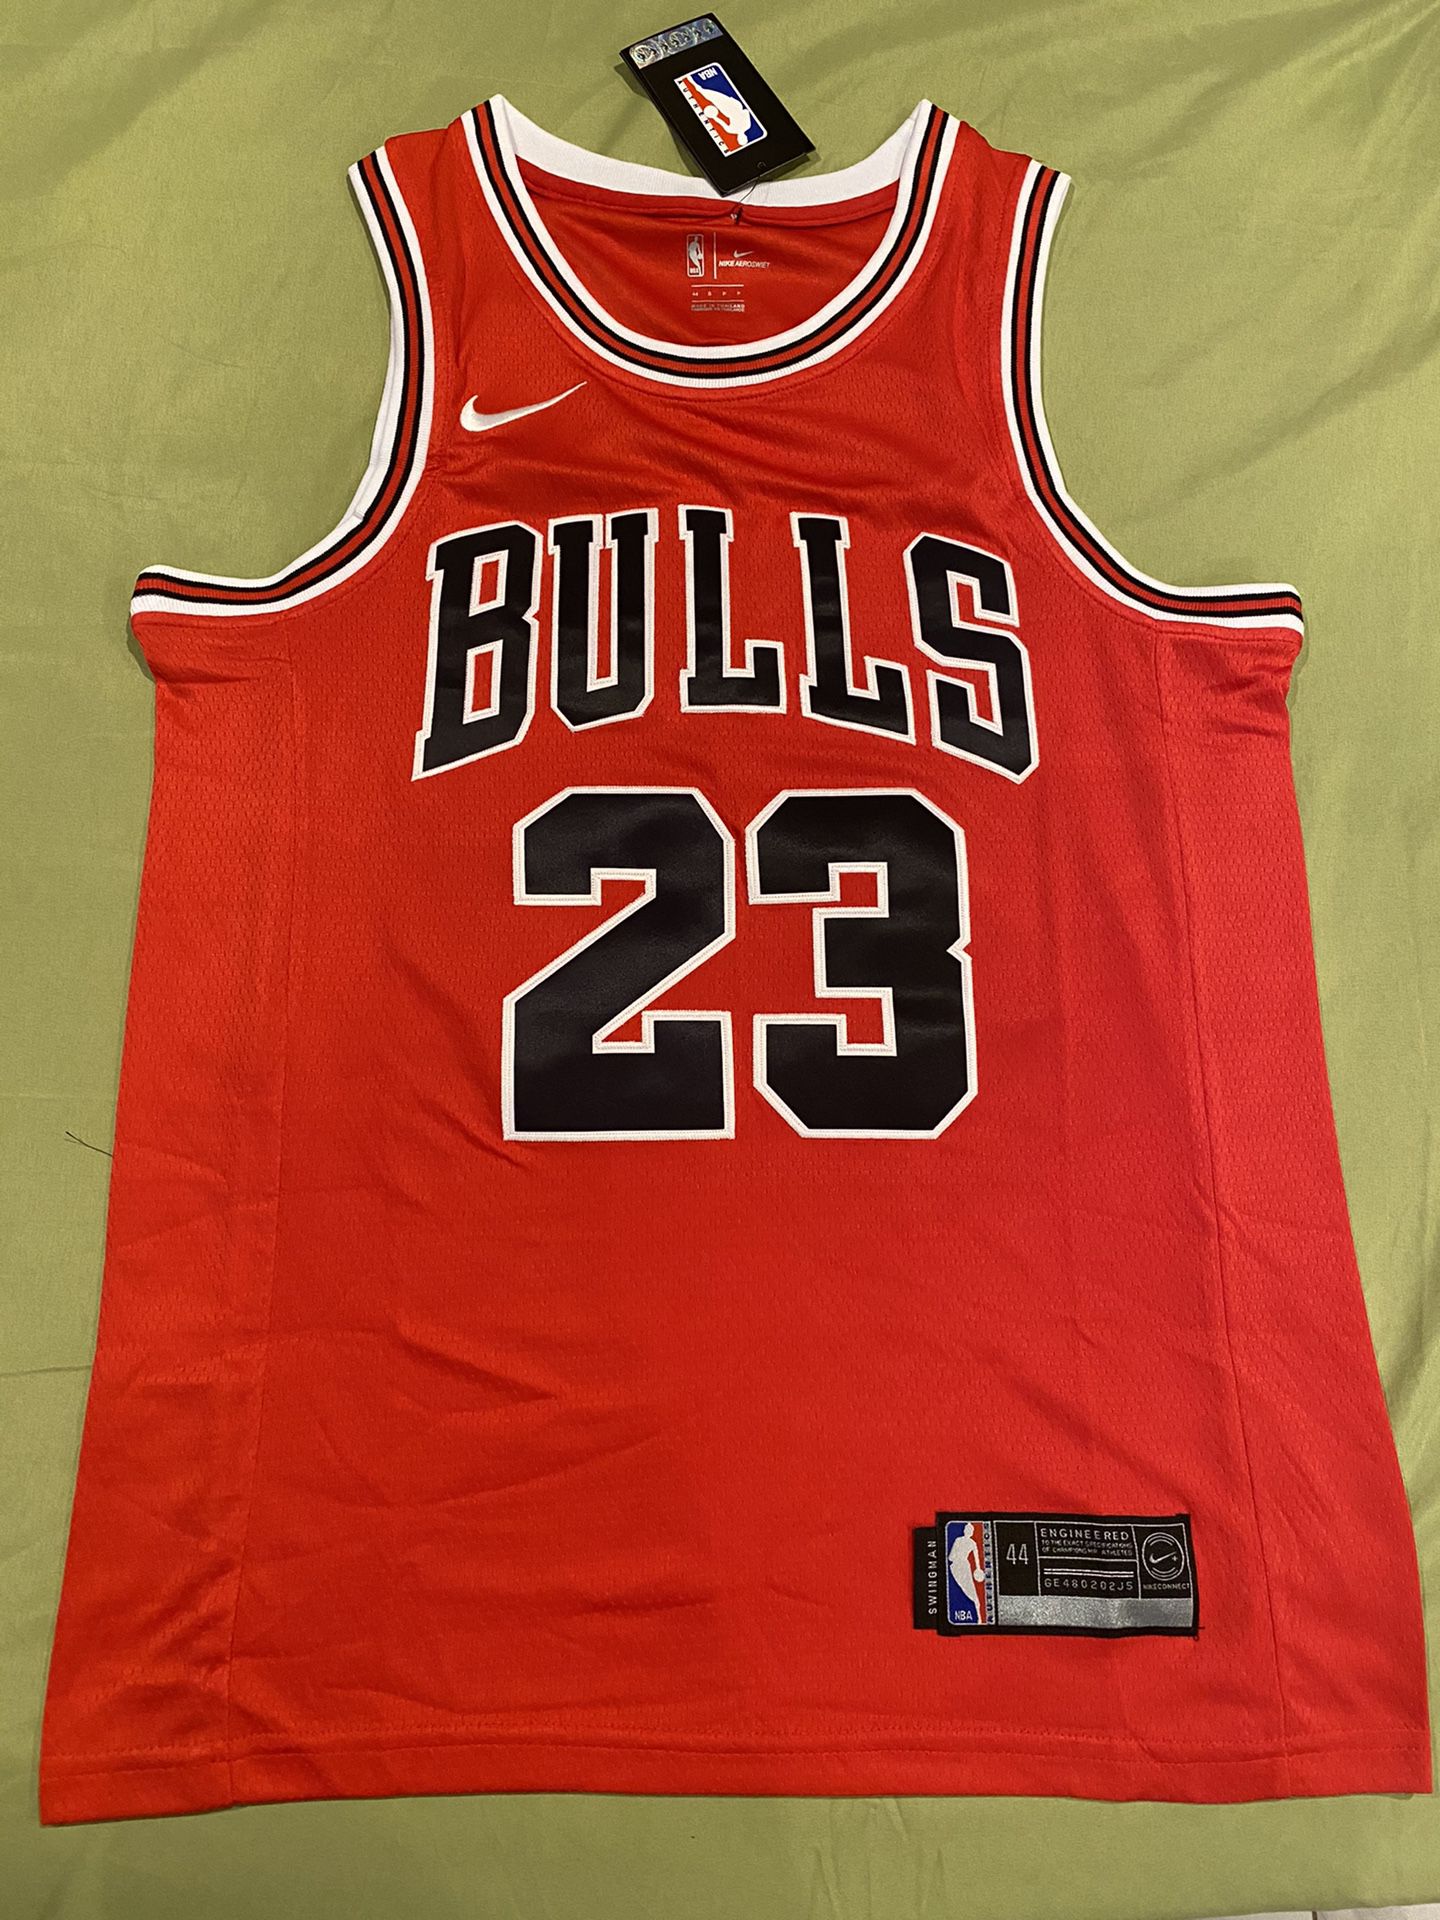 Bulls Jordan #23 Small